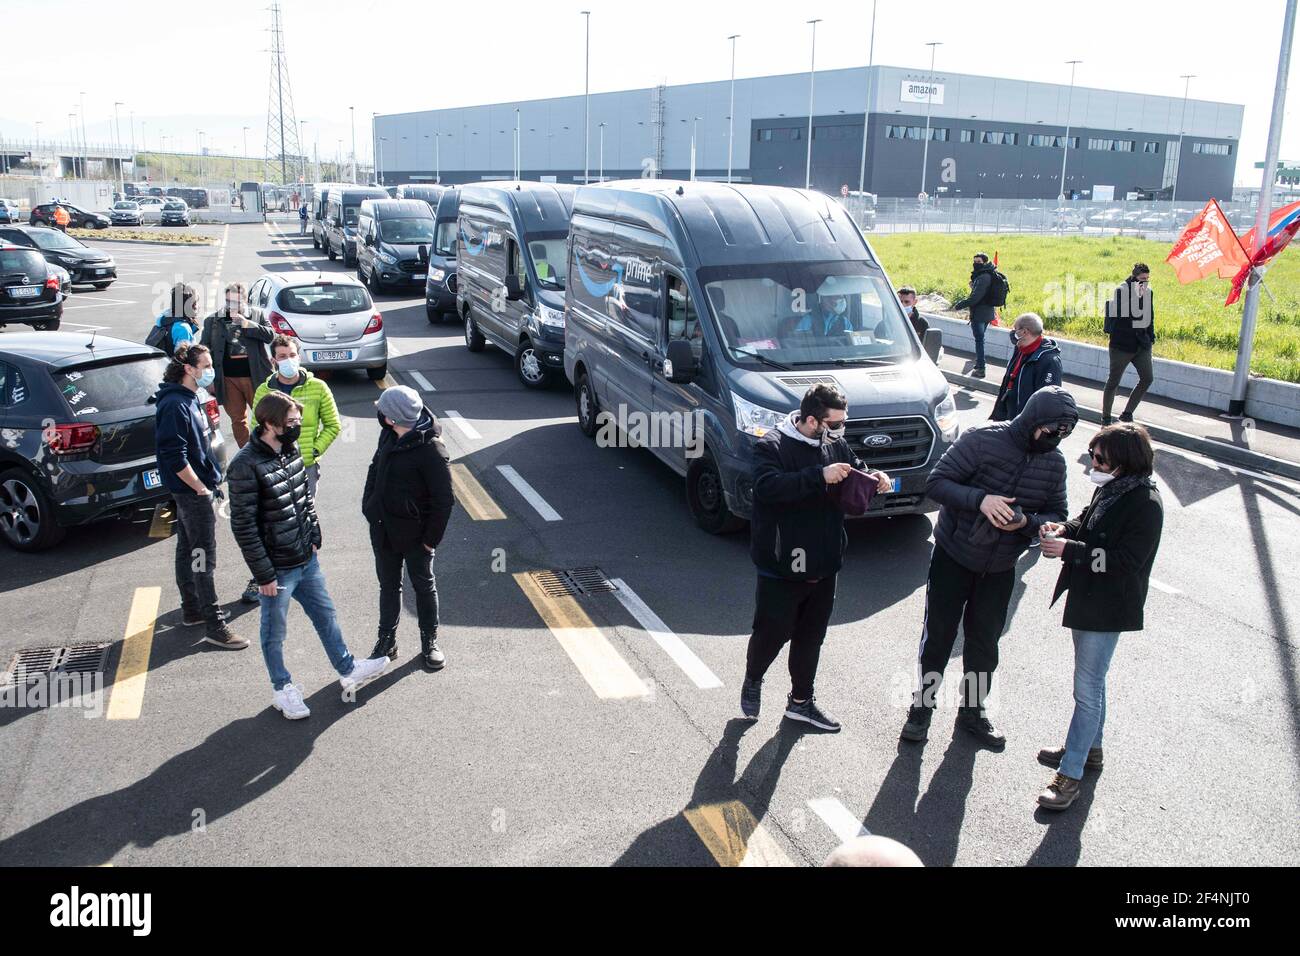 22 marzo 2021, Castegnato, Brescia, Italia: Una lunga linea di furgoni  Amazon prime è bloccata dall'uscita dal centro di smistamento di  Castegnato. Circa 40,000 dei lavoratori logistici del gigante dello  shopping online